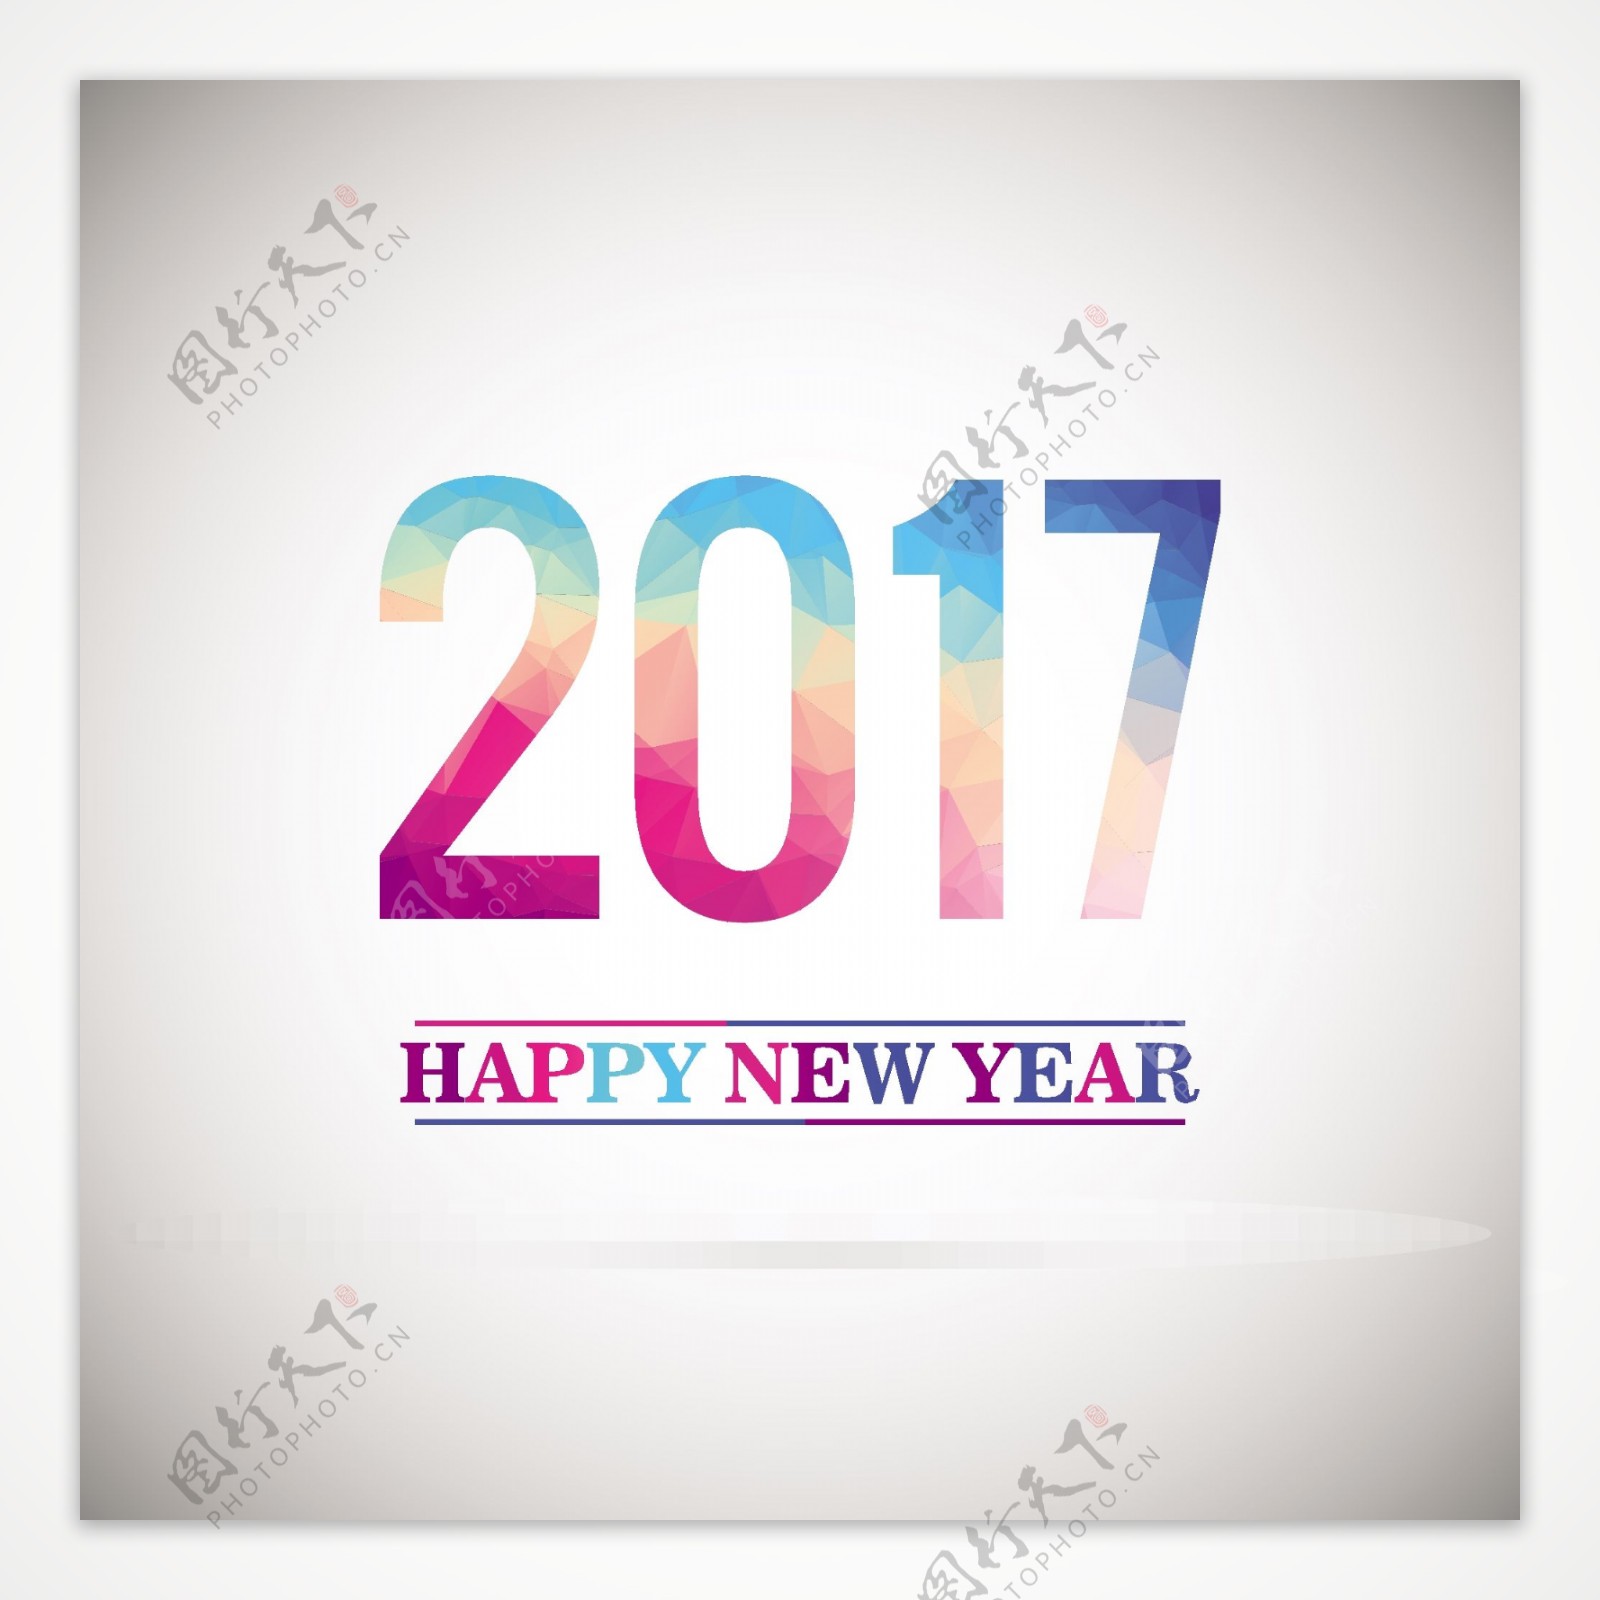 新年快乐多边形2017背景